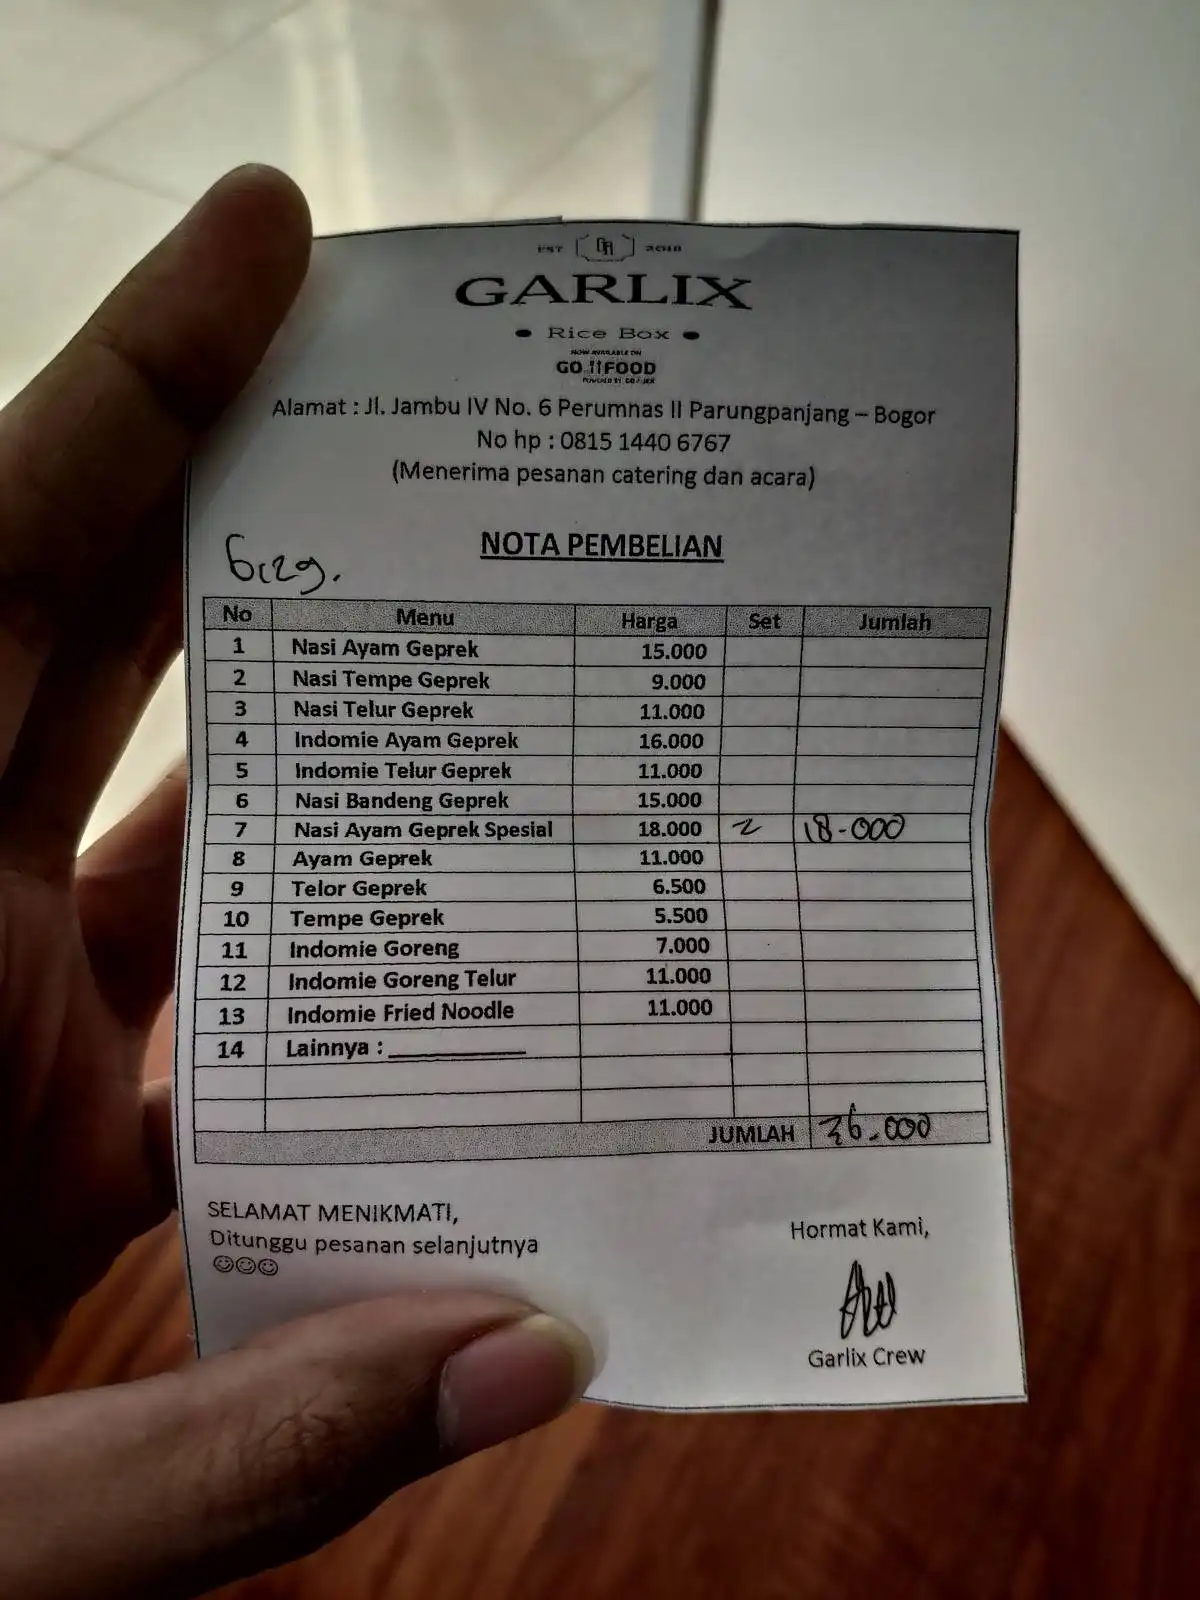 Garlix Rice Box Parungpanjang